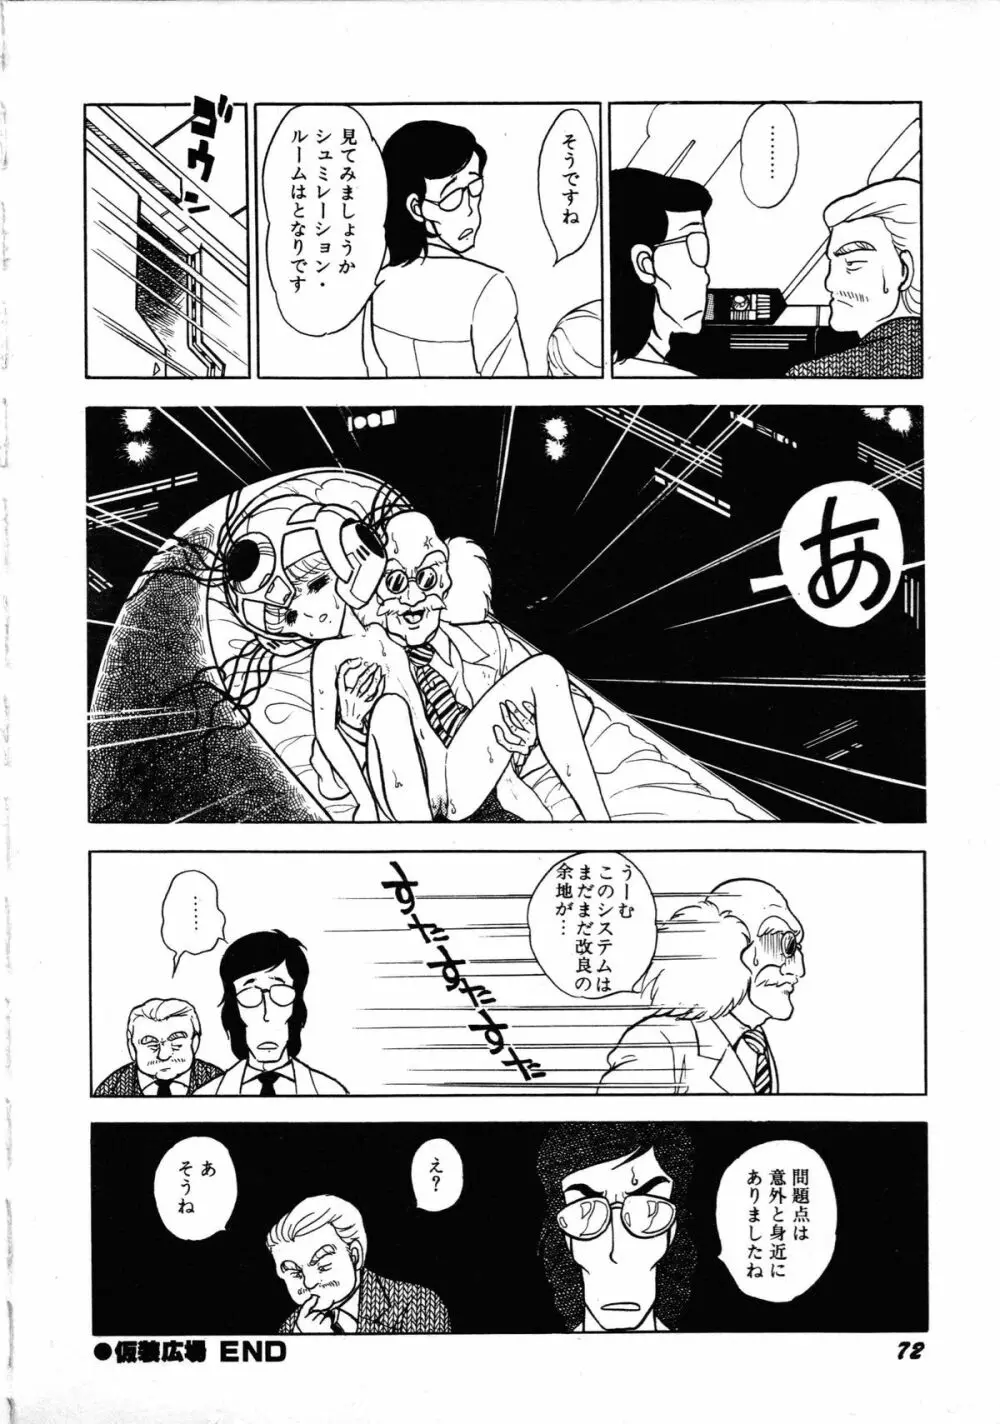 ロボット&美少女傑作選 レモン・ピープル1982-1986 76ページ